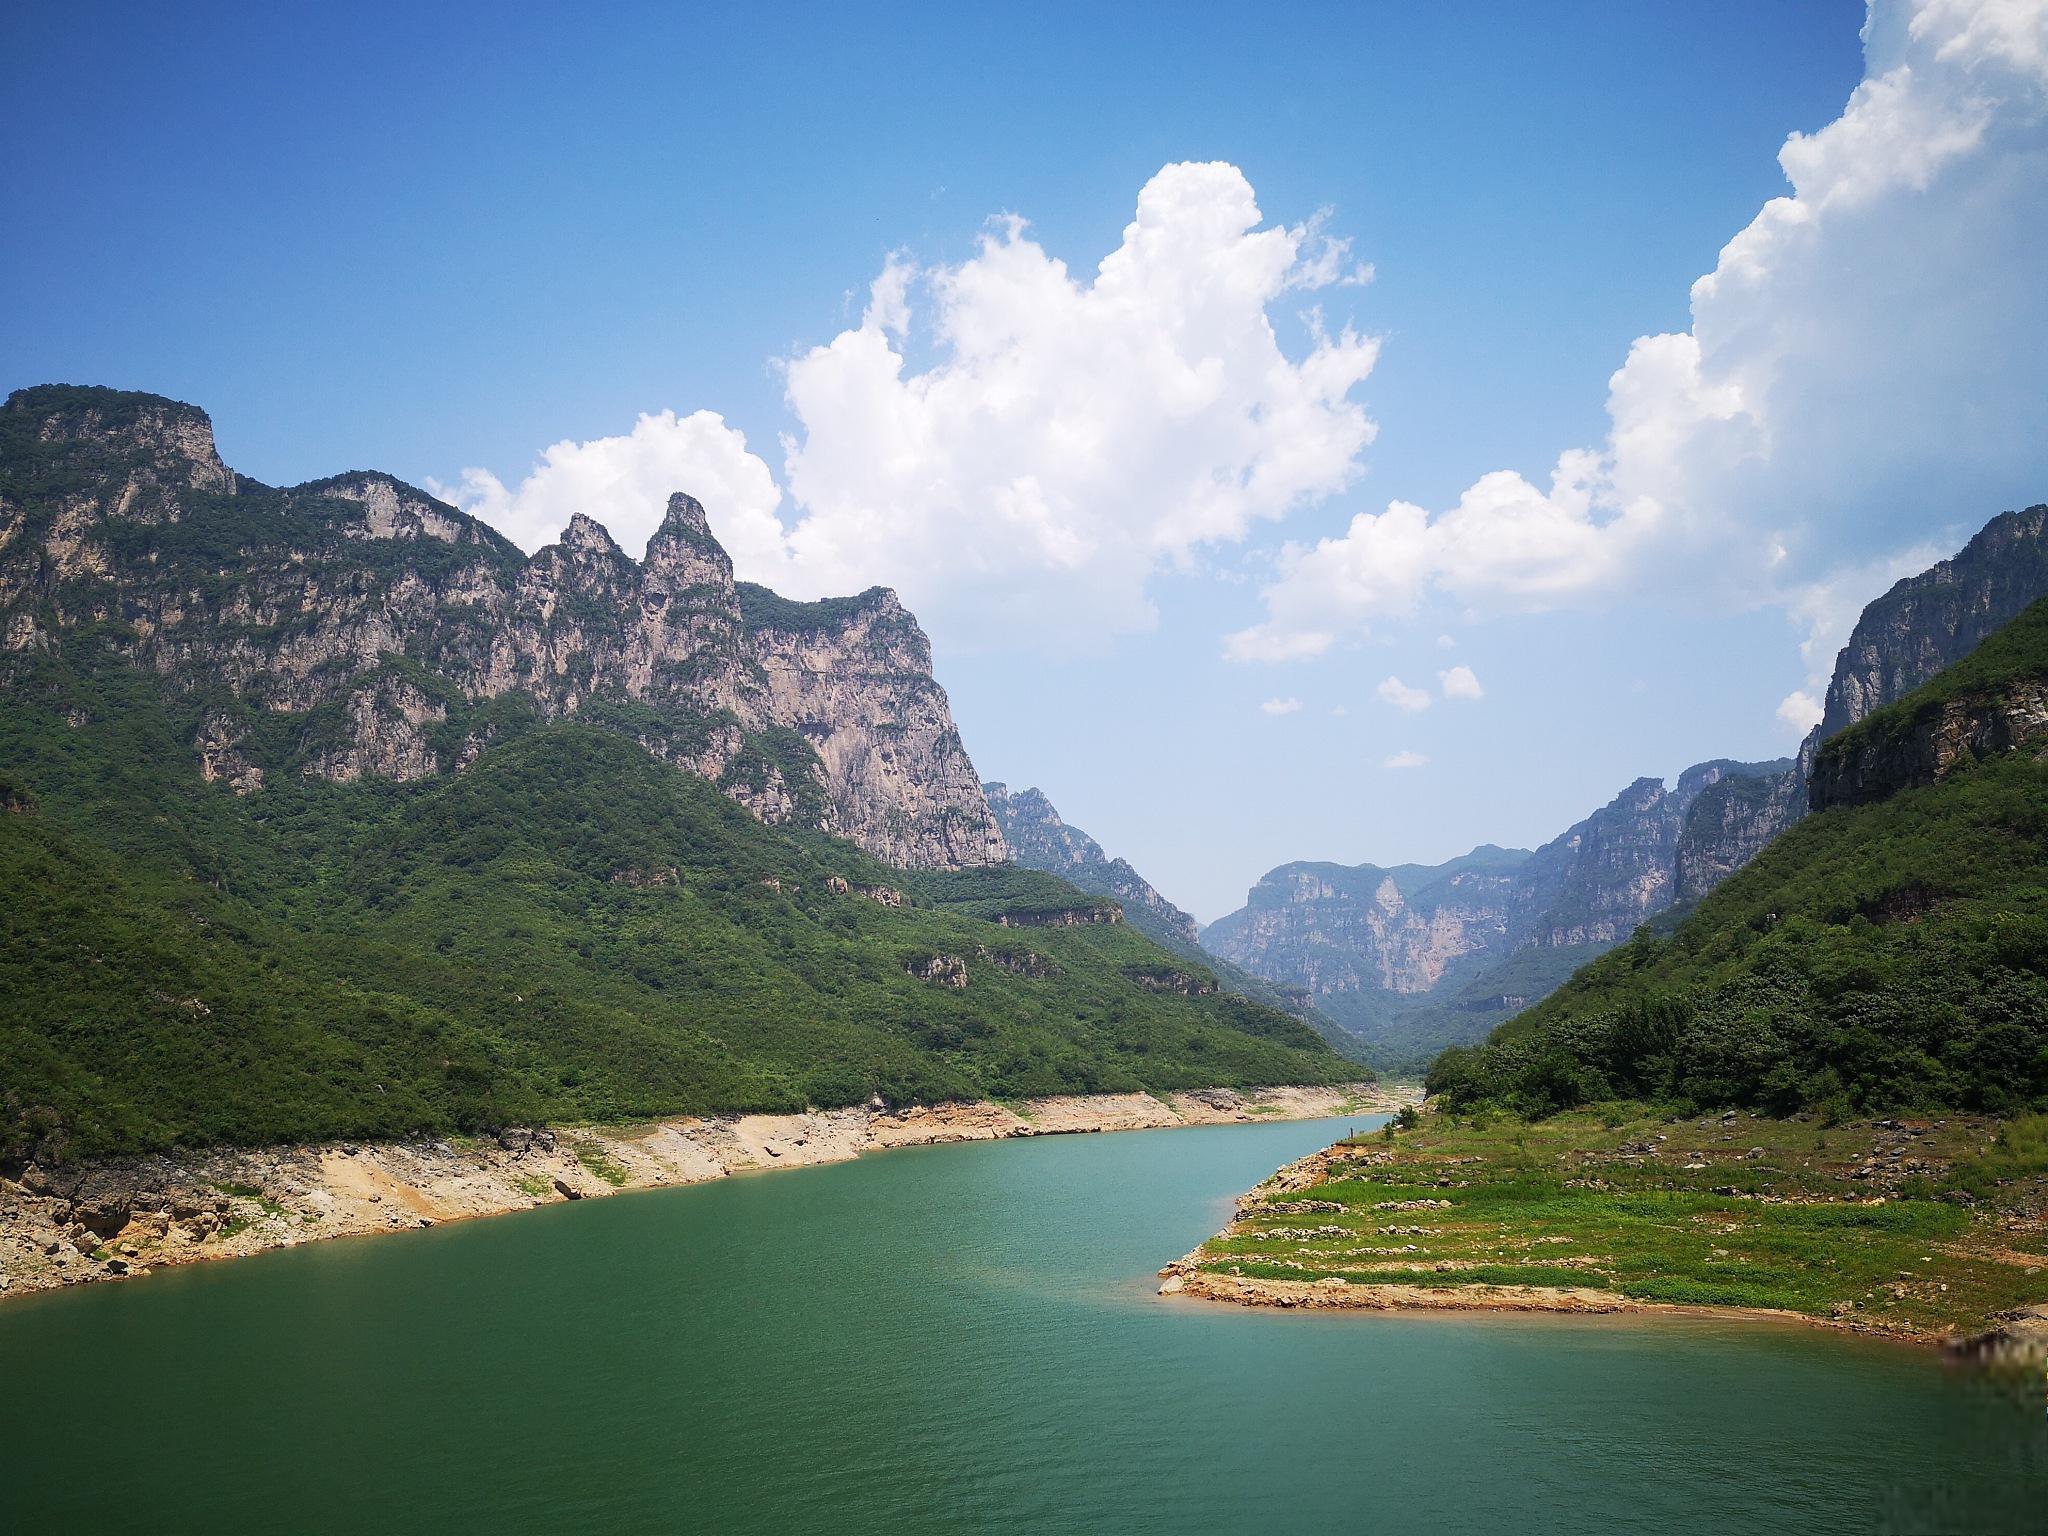 京娘湖旅游攻略 京娘湖位于河北省邯郸市武安活水乡境内,是一处以湖光